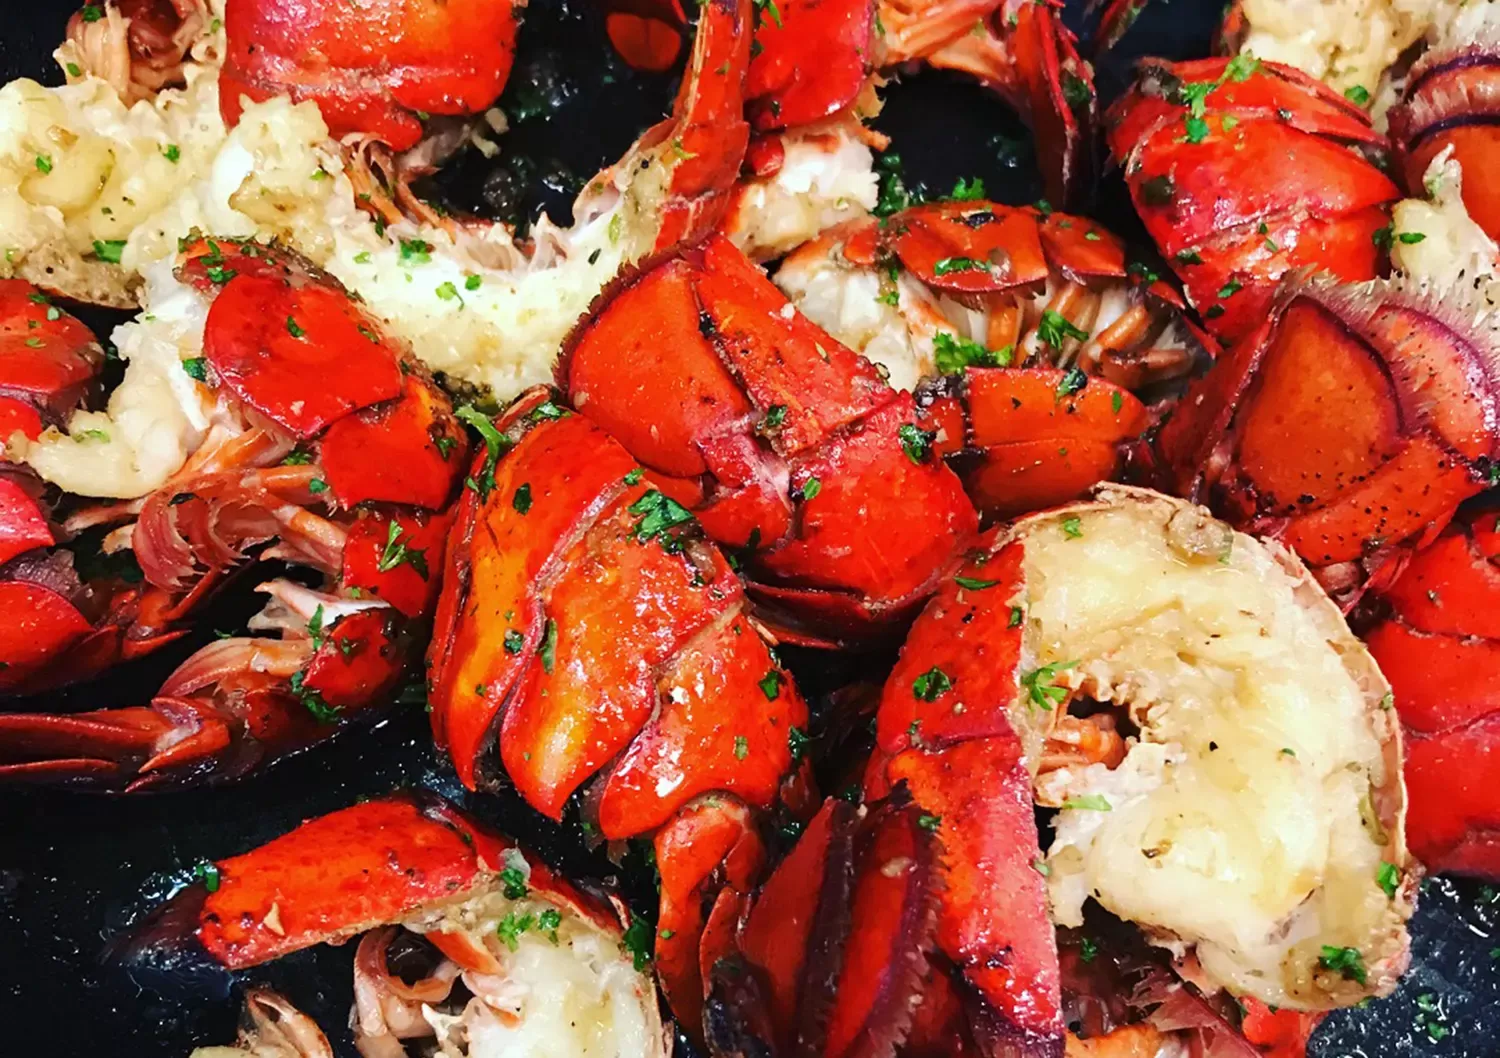 Lobster Platter